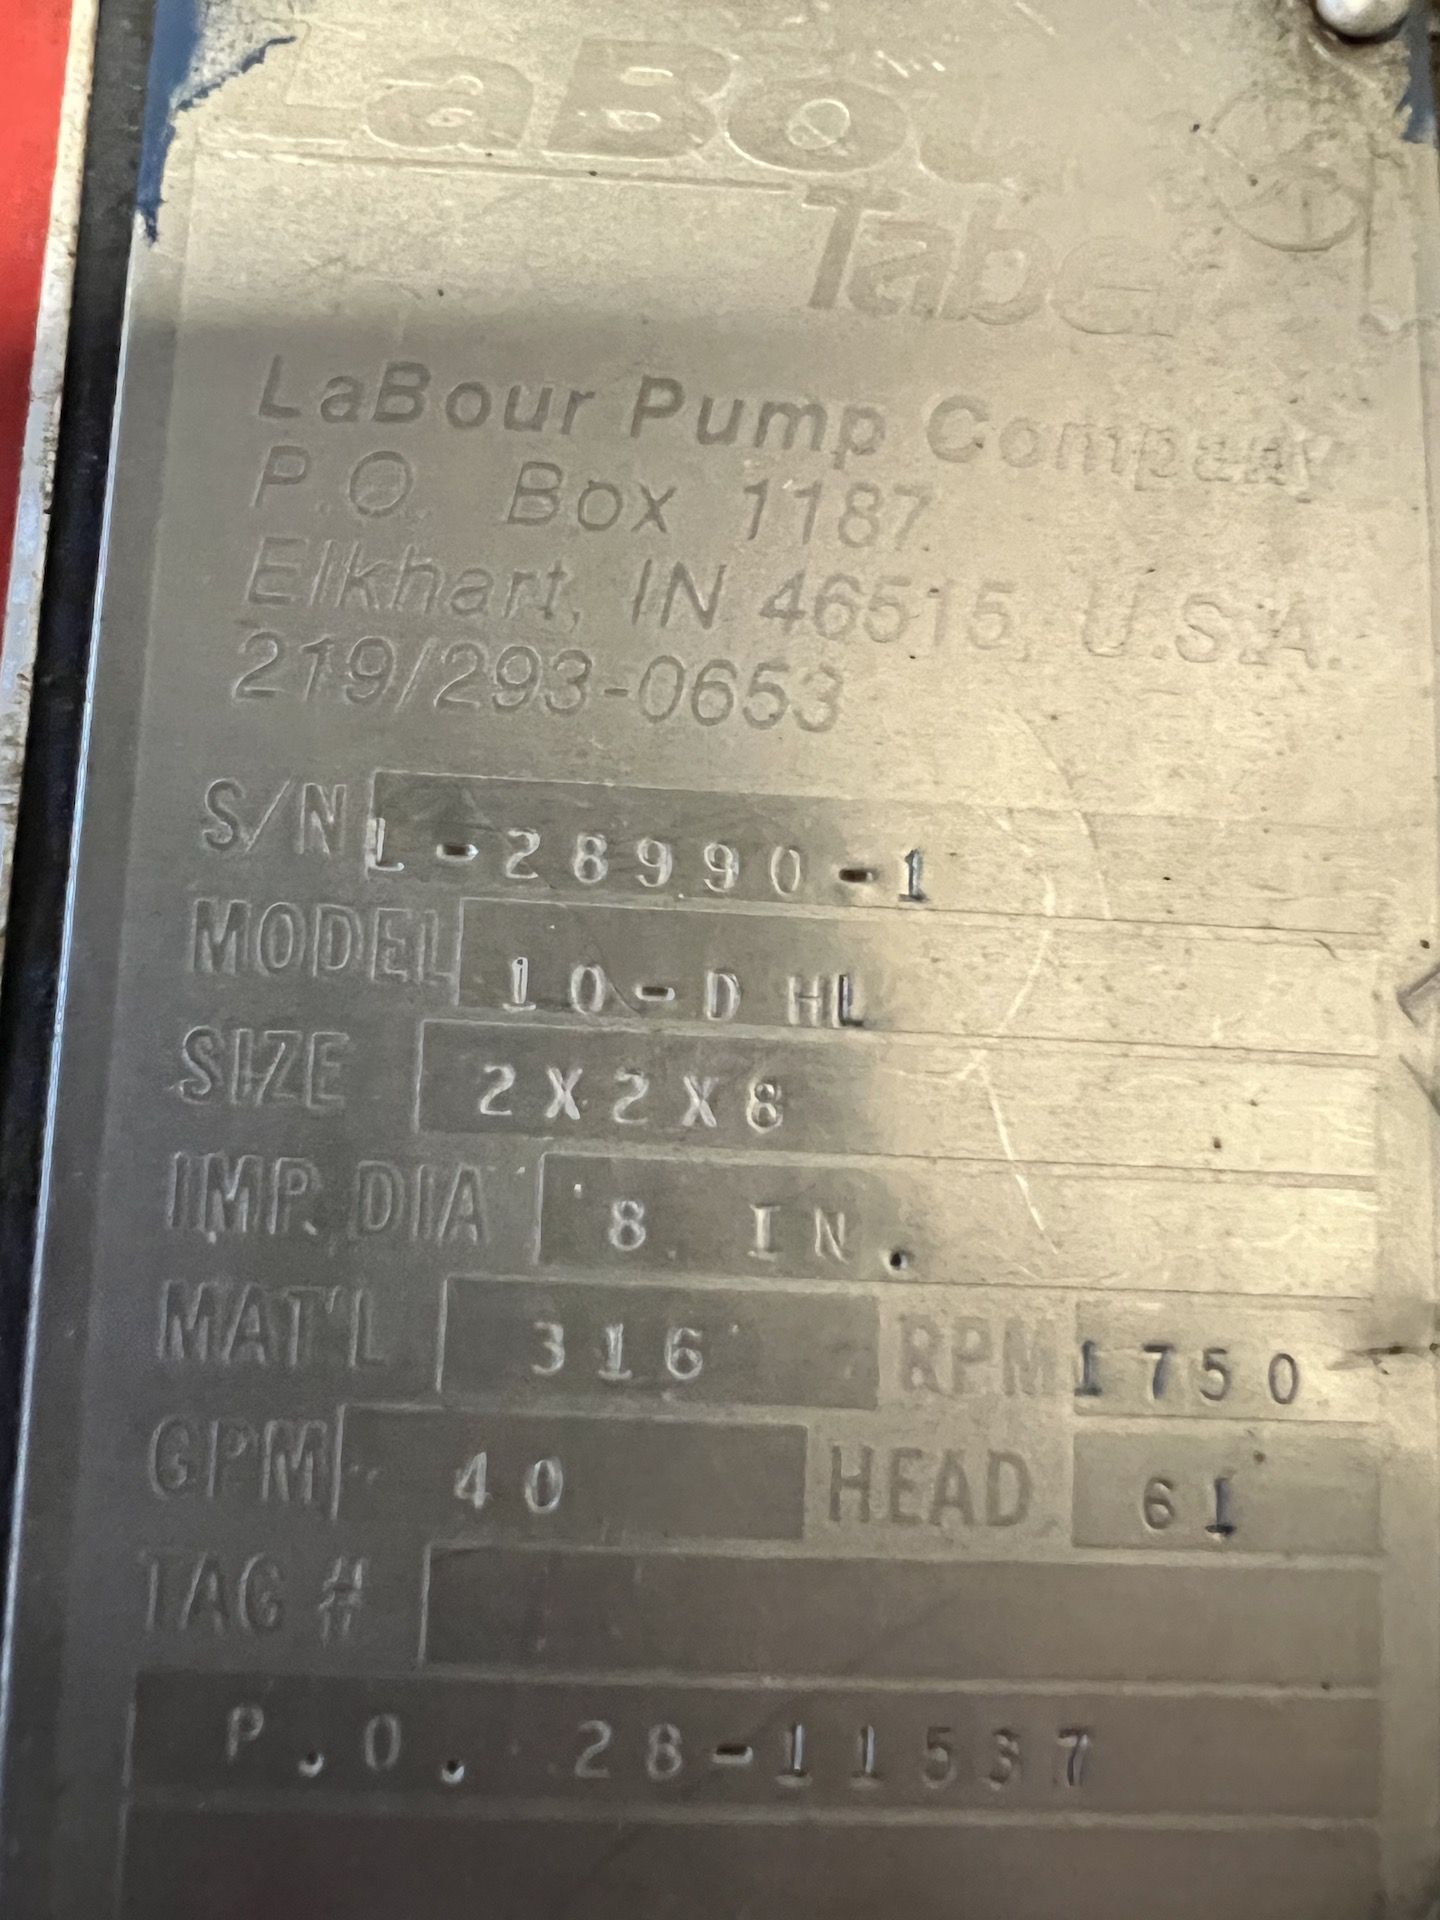 (3) PUMPS ON PALLET, (1) Labour Pump Model # 10-DHL, 2 x 2 x 8, 8" Impeller, 316 SS, 1750 RPM, 40 G - Image 8 of 10